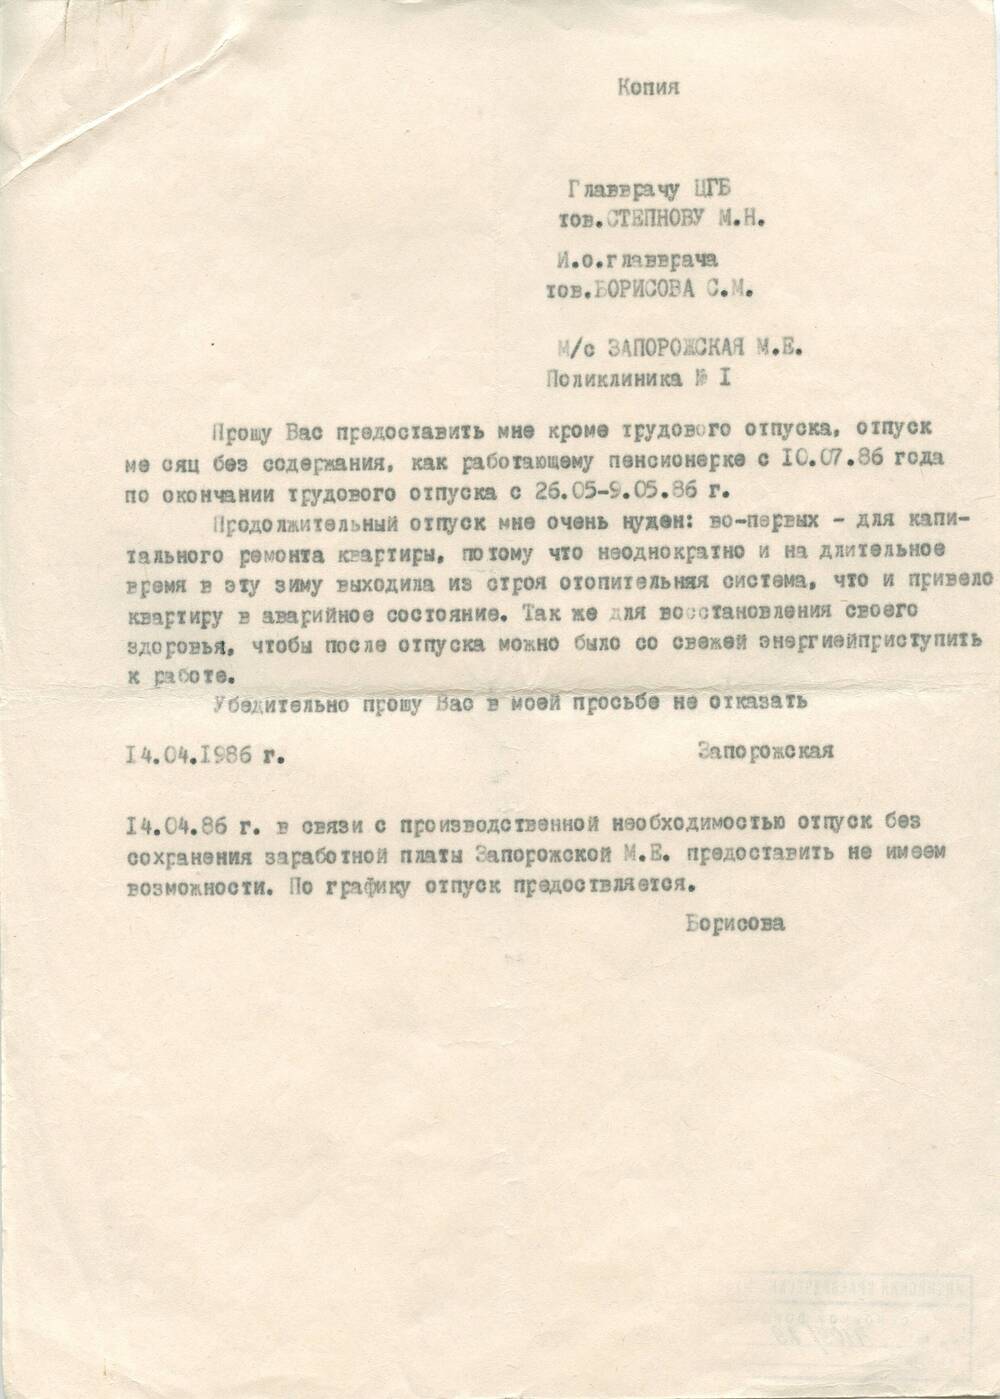 Документ Копия заявления медсестры Запорожской М.Е. о предоставлении отпуска за свой счет от 14.04.1986 г.